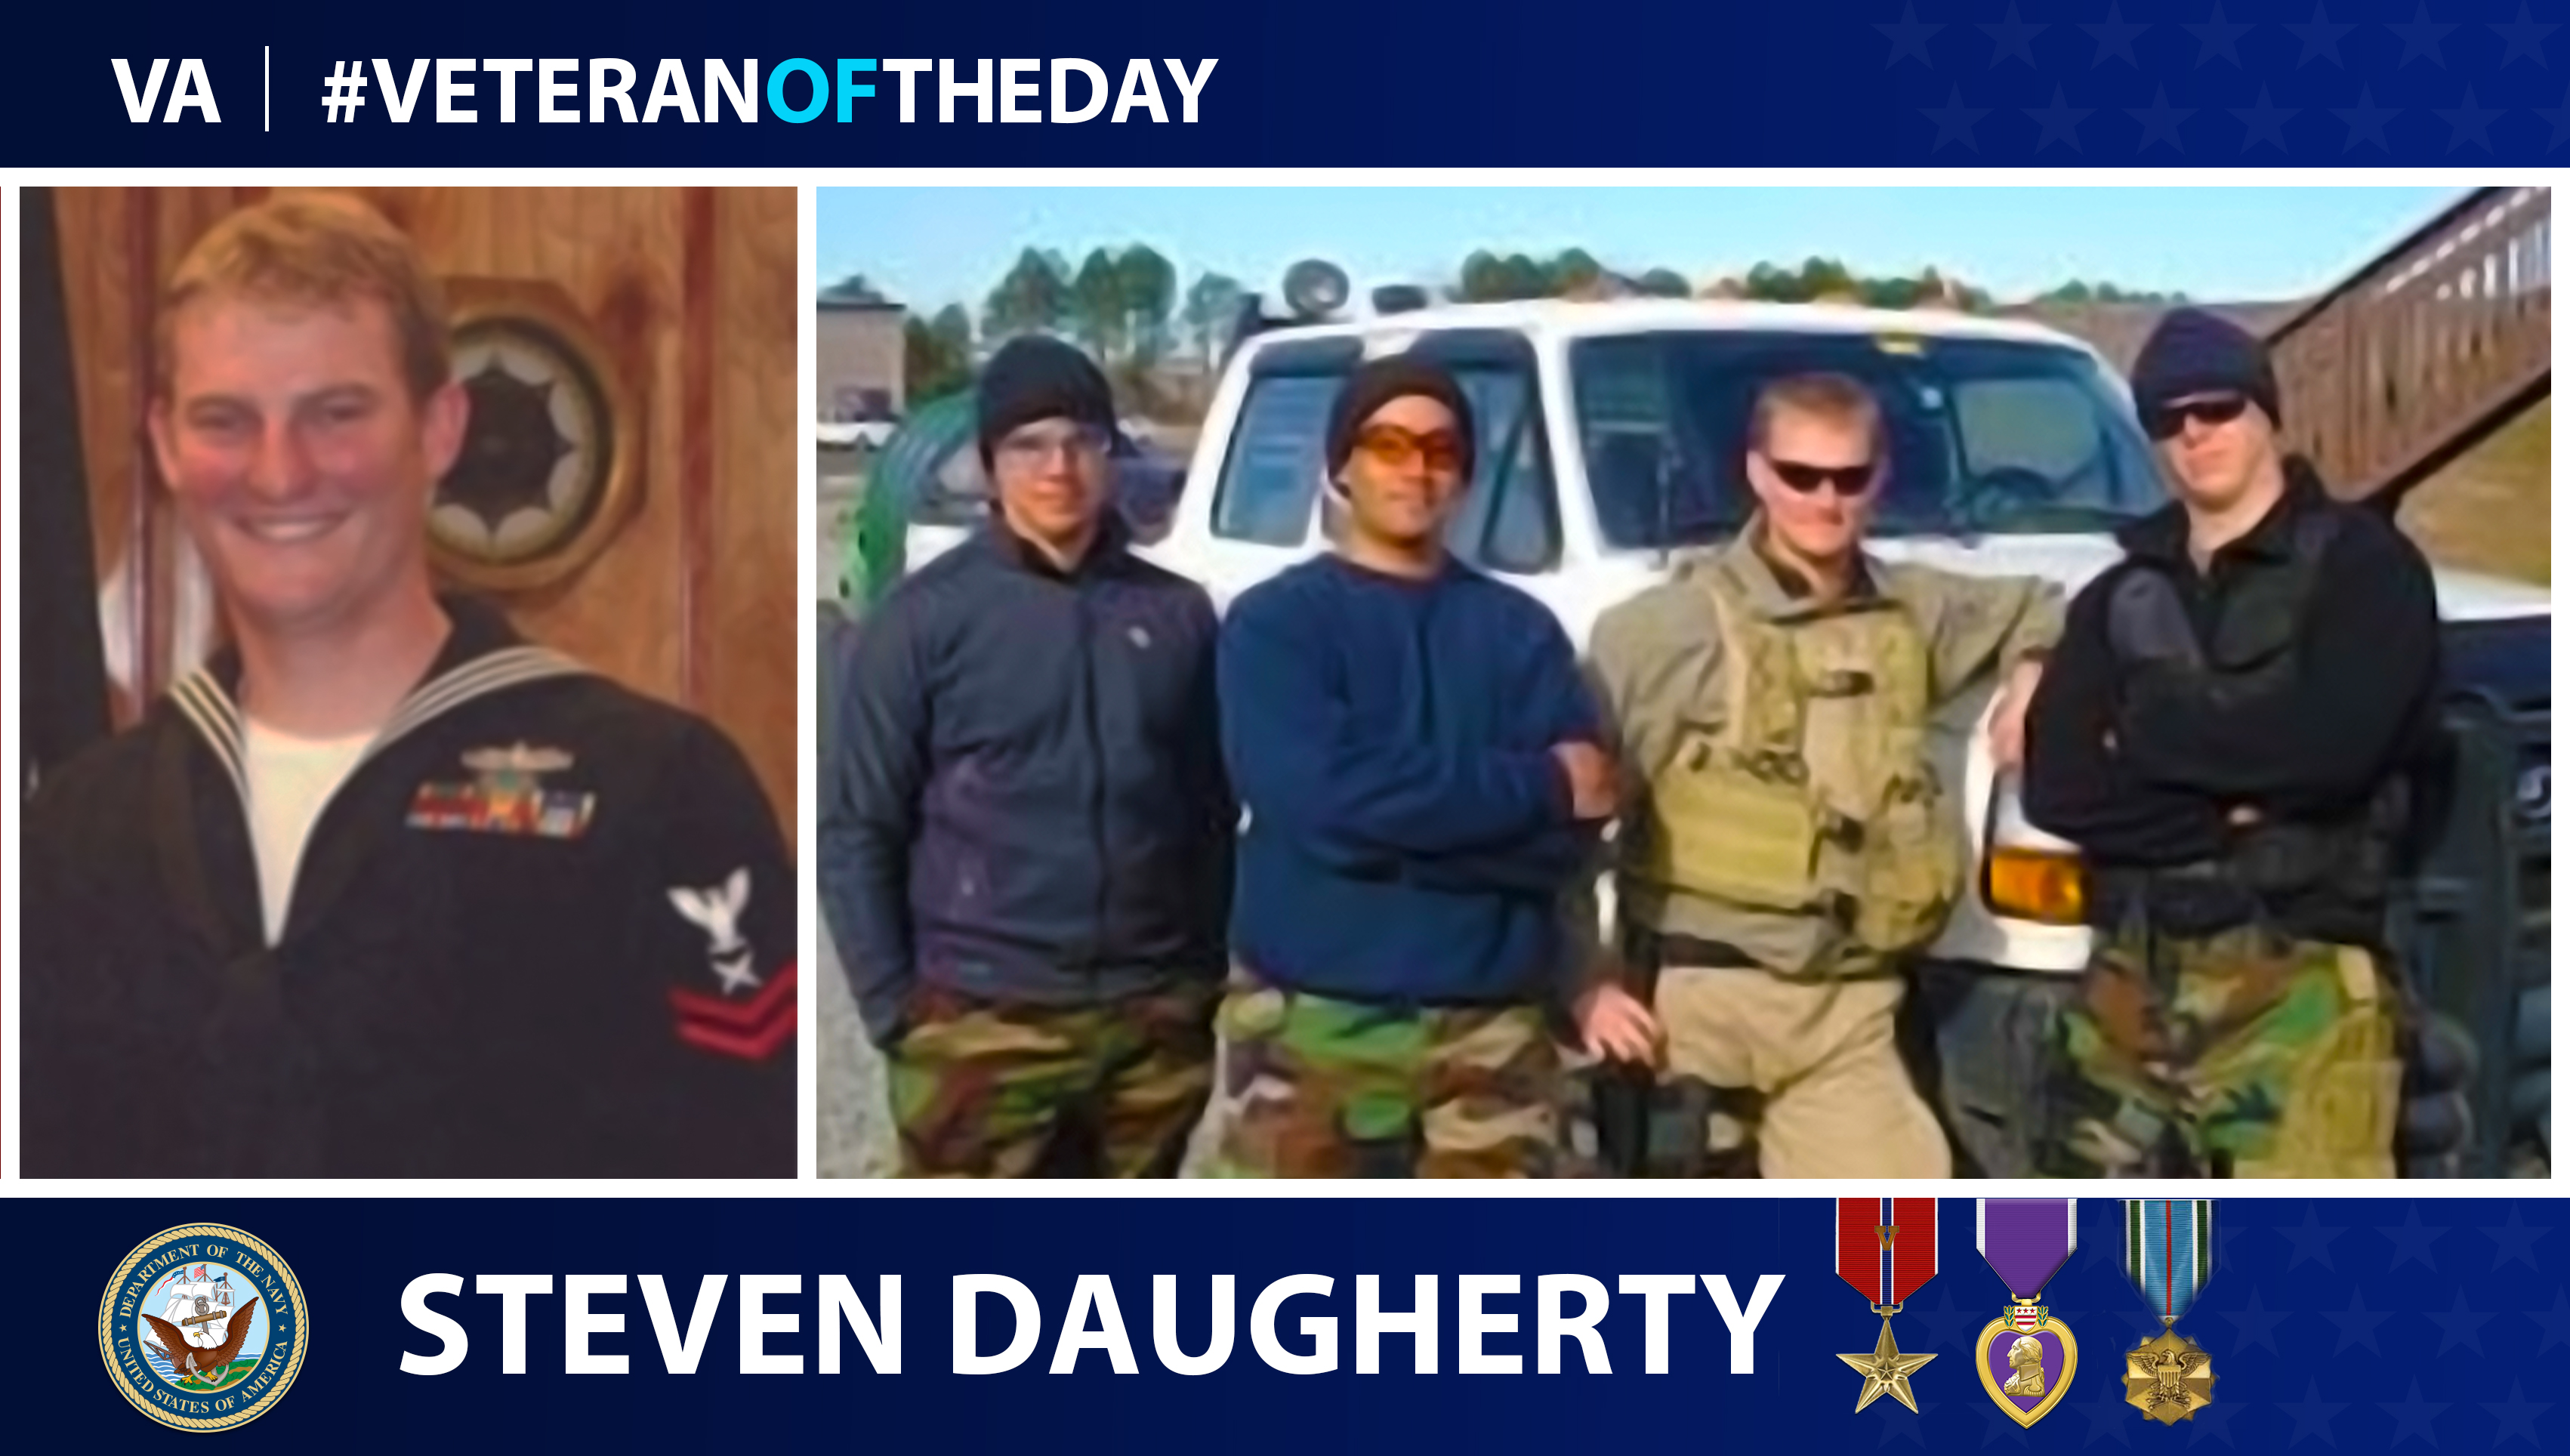 Navy Veteran Steven Daugherty is today's Veteran of the Day.